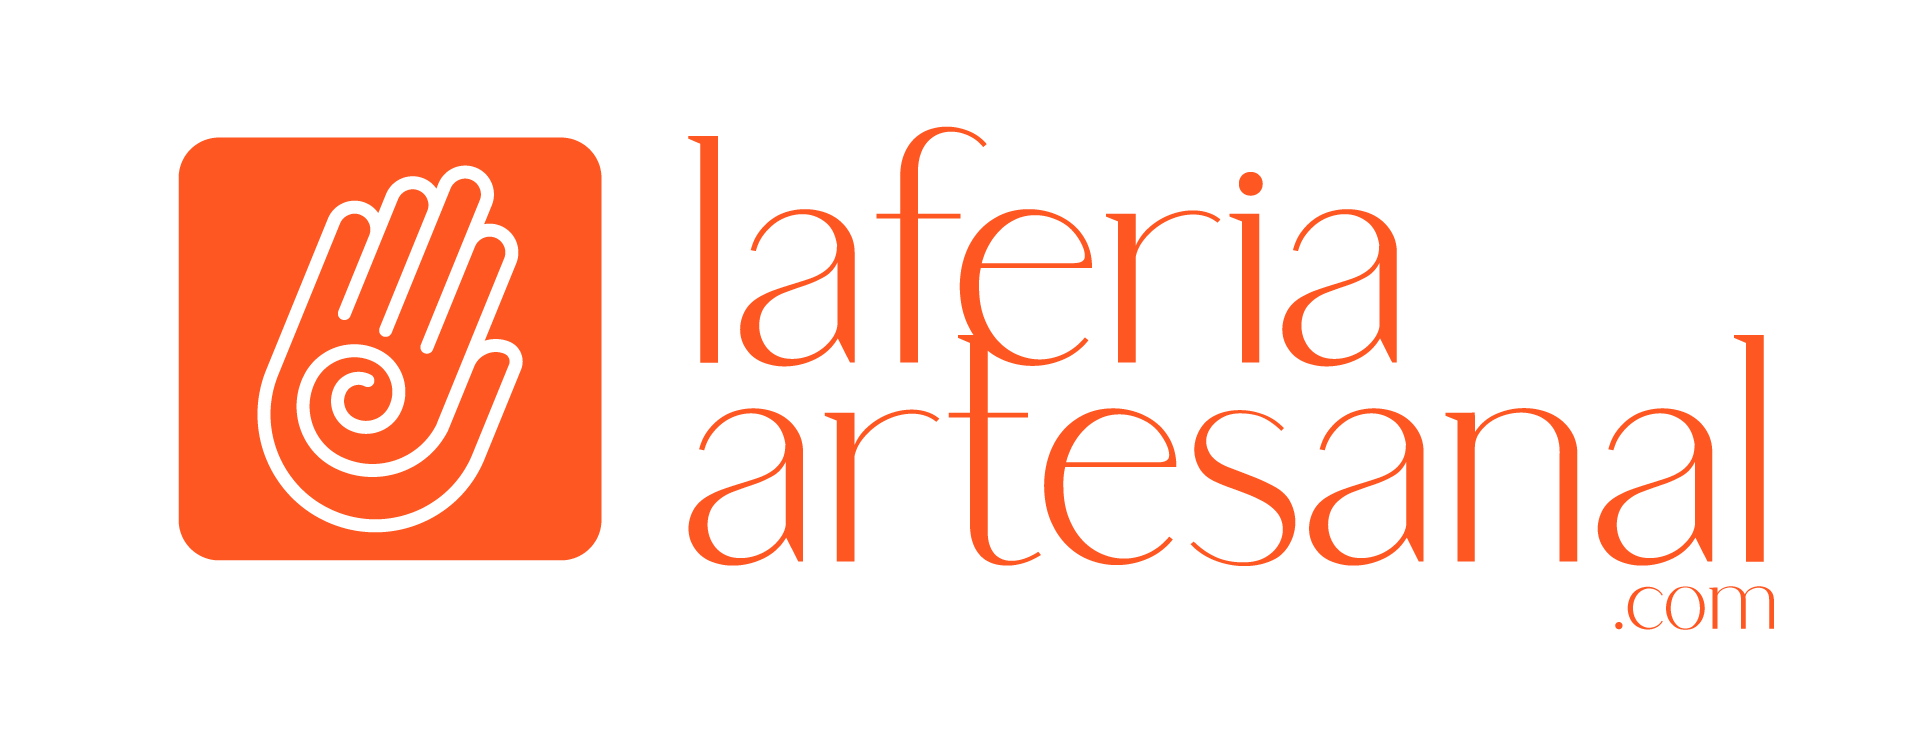 laferiaartesanal.com – Plataforma en línea para artesanos y emprendedores ecuatorianos- Exhibir y vender tus productos a través de una feria virtual.